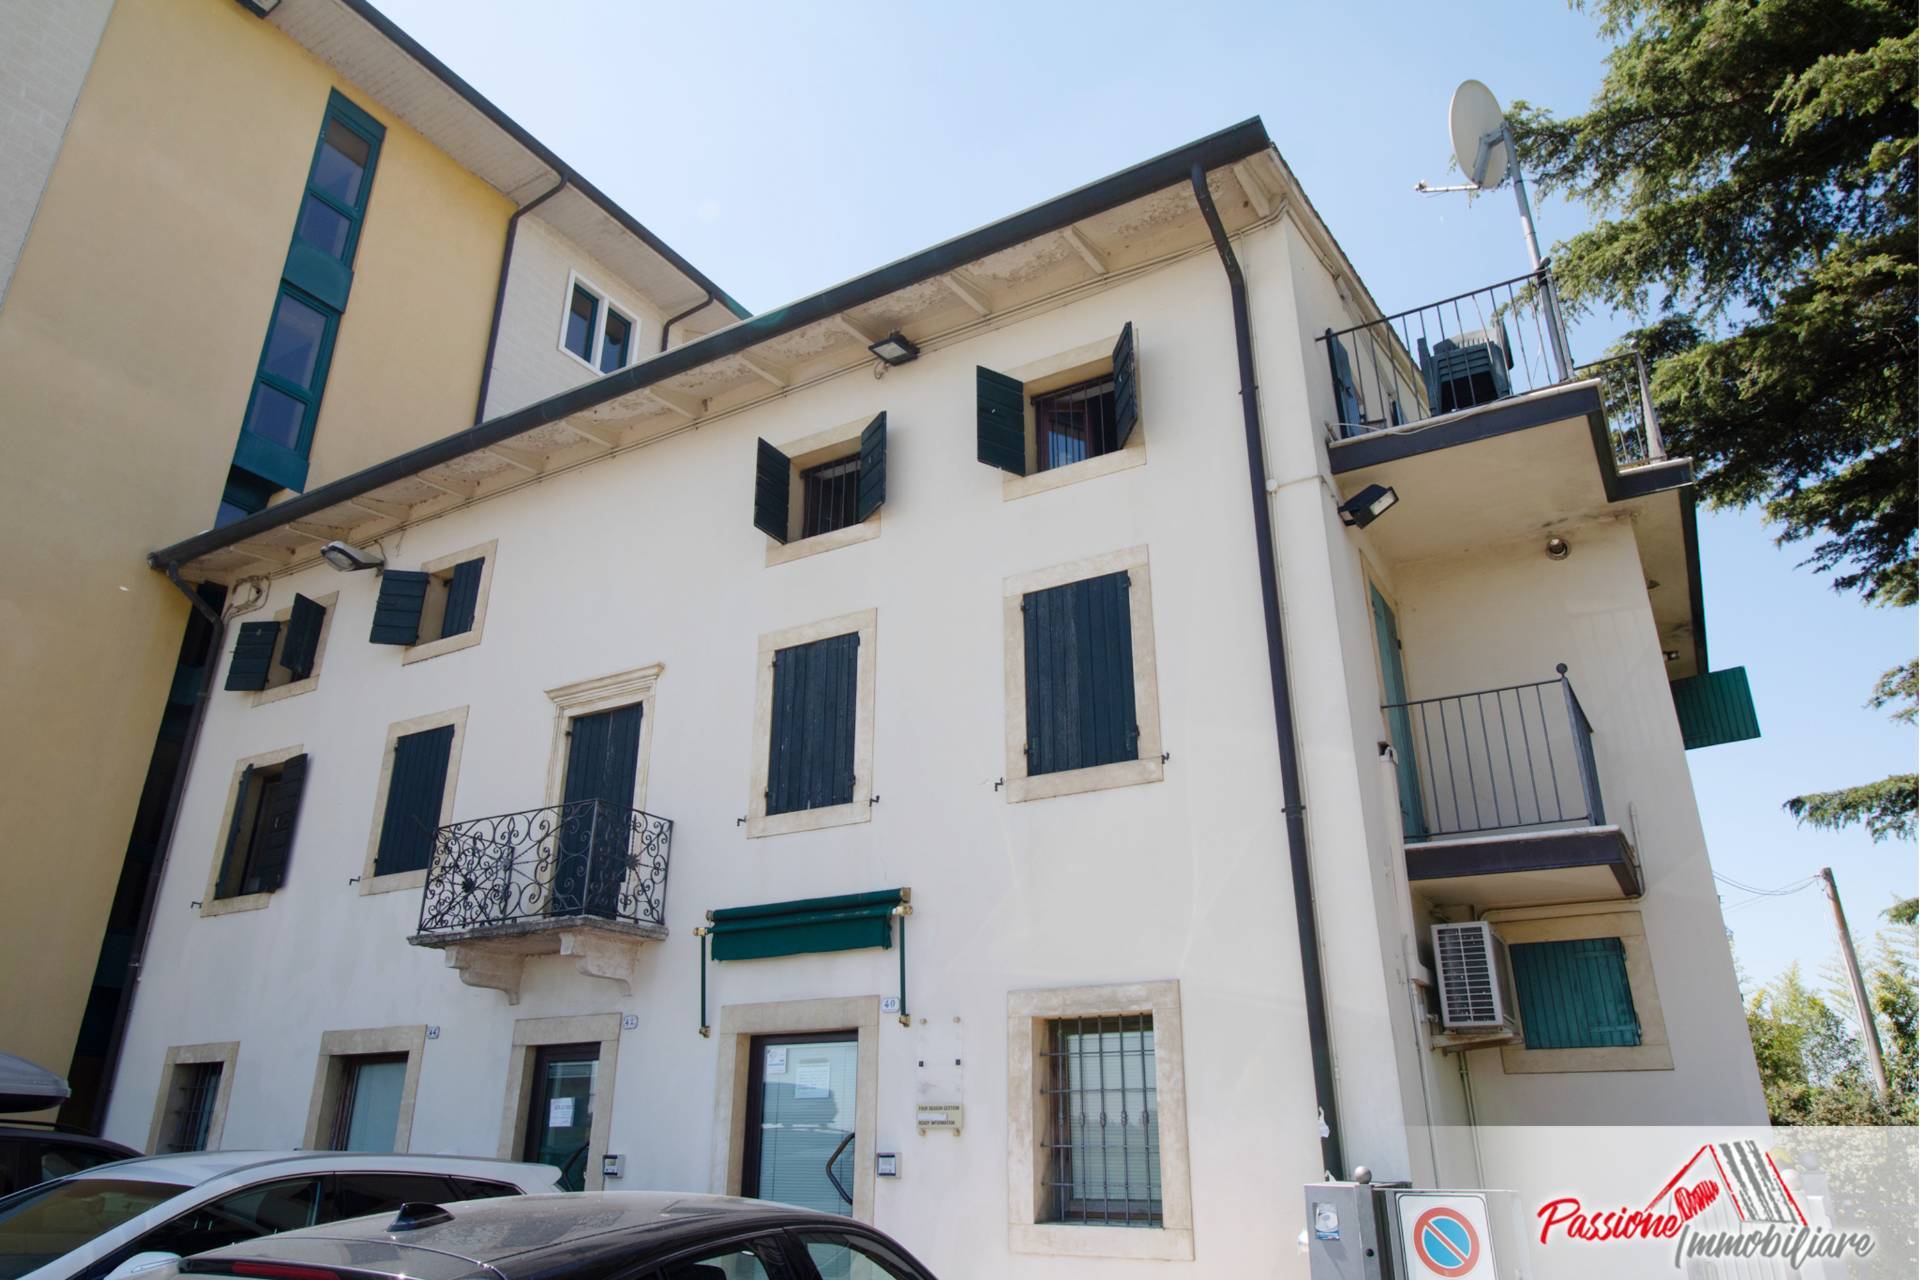 Villa in vendita a Sona, 10 locali, zona gnano, prezzo € 435.000 | PortaleAgenzieImmobiliari.it